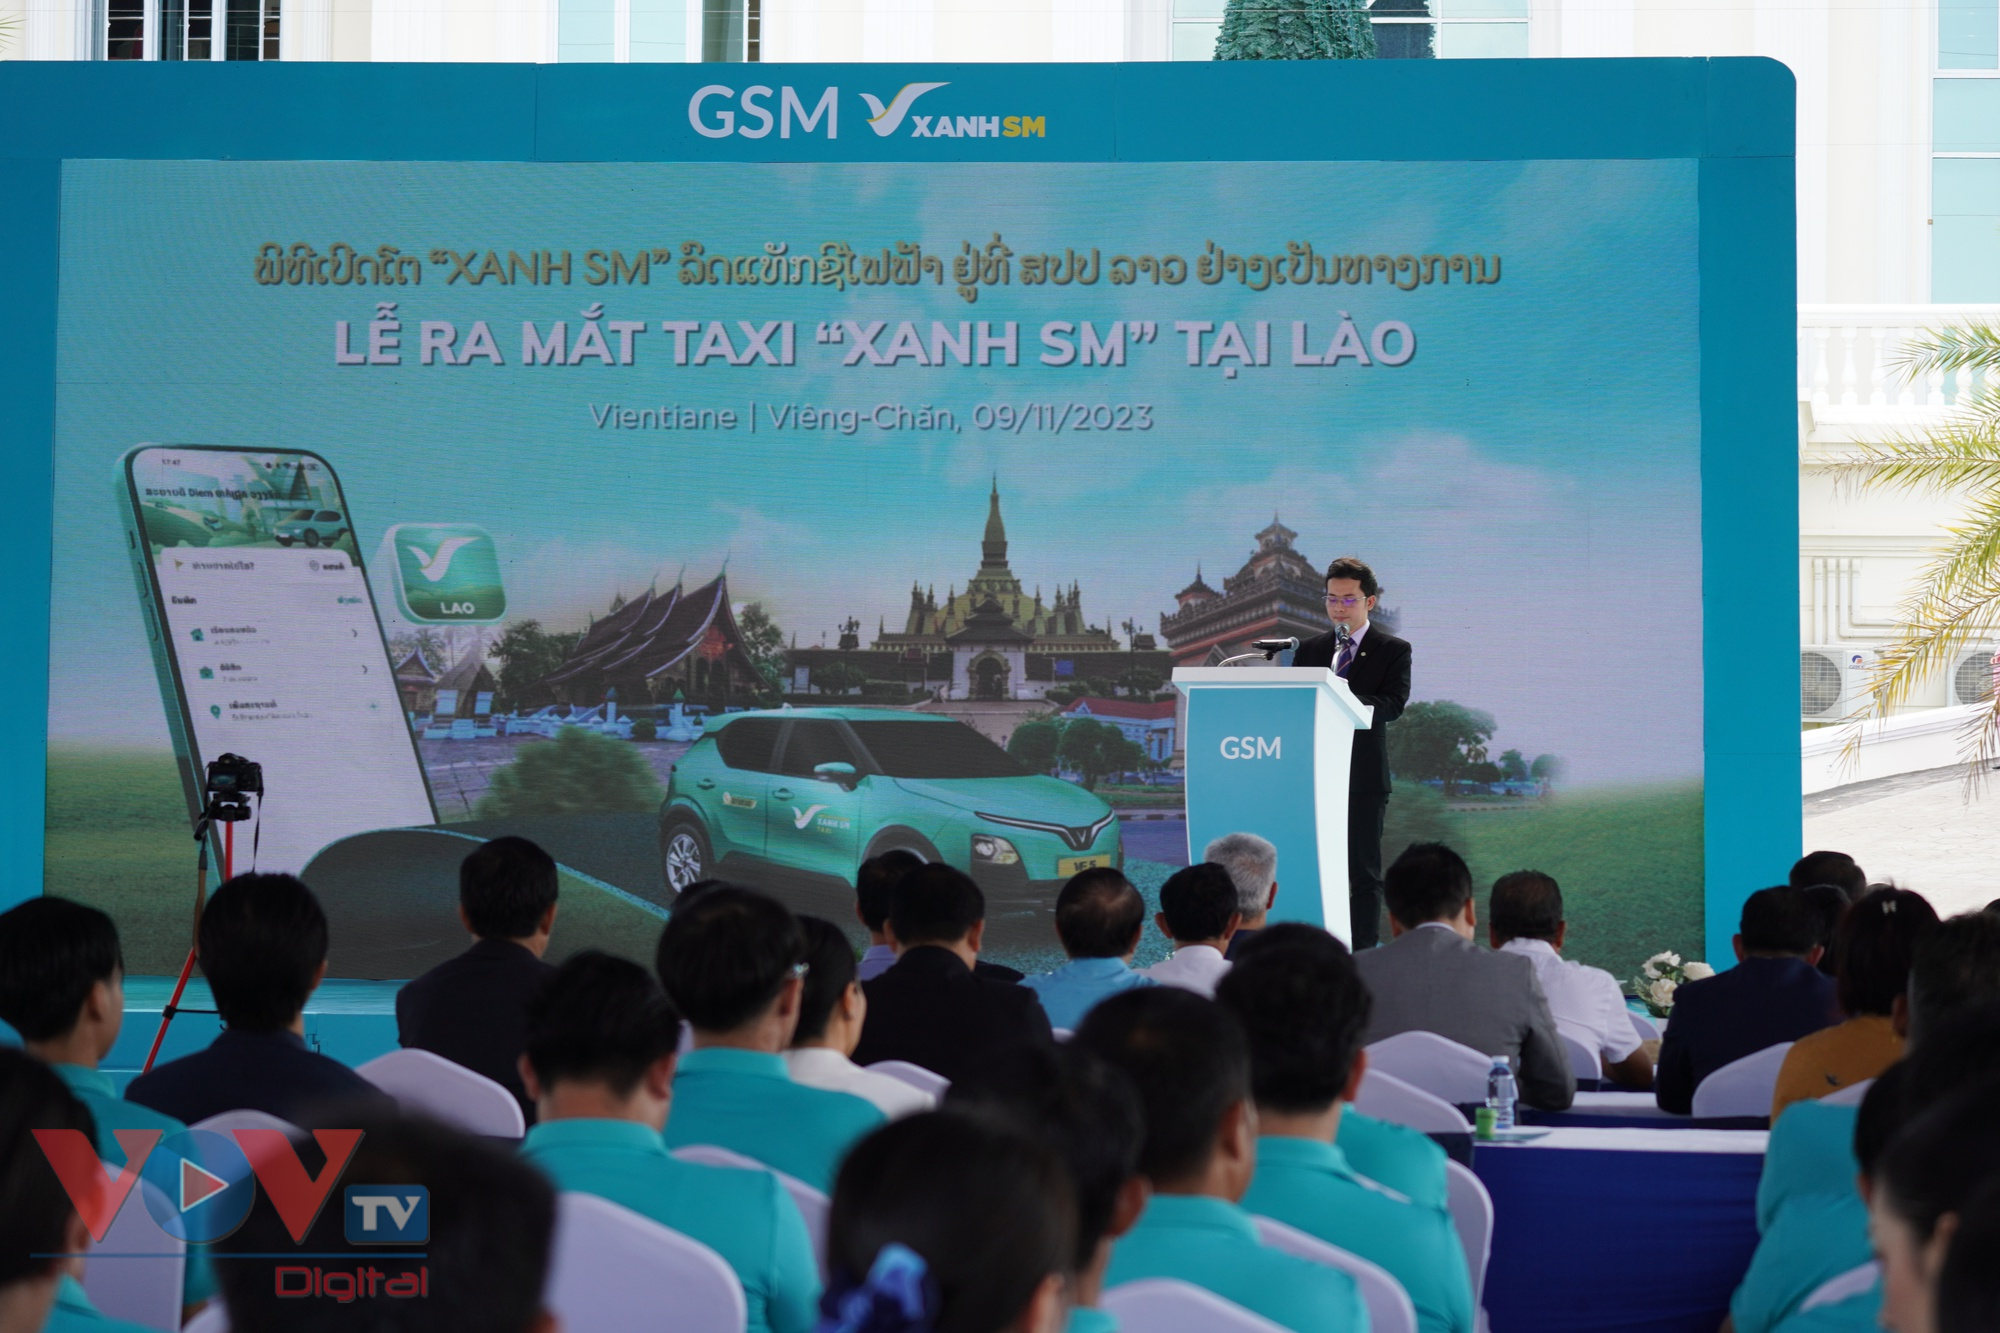 Dịch vụ taxi Xanh SM của Việt Nam chính thức khai trương tại Lào - Ảnh 4.